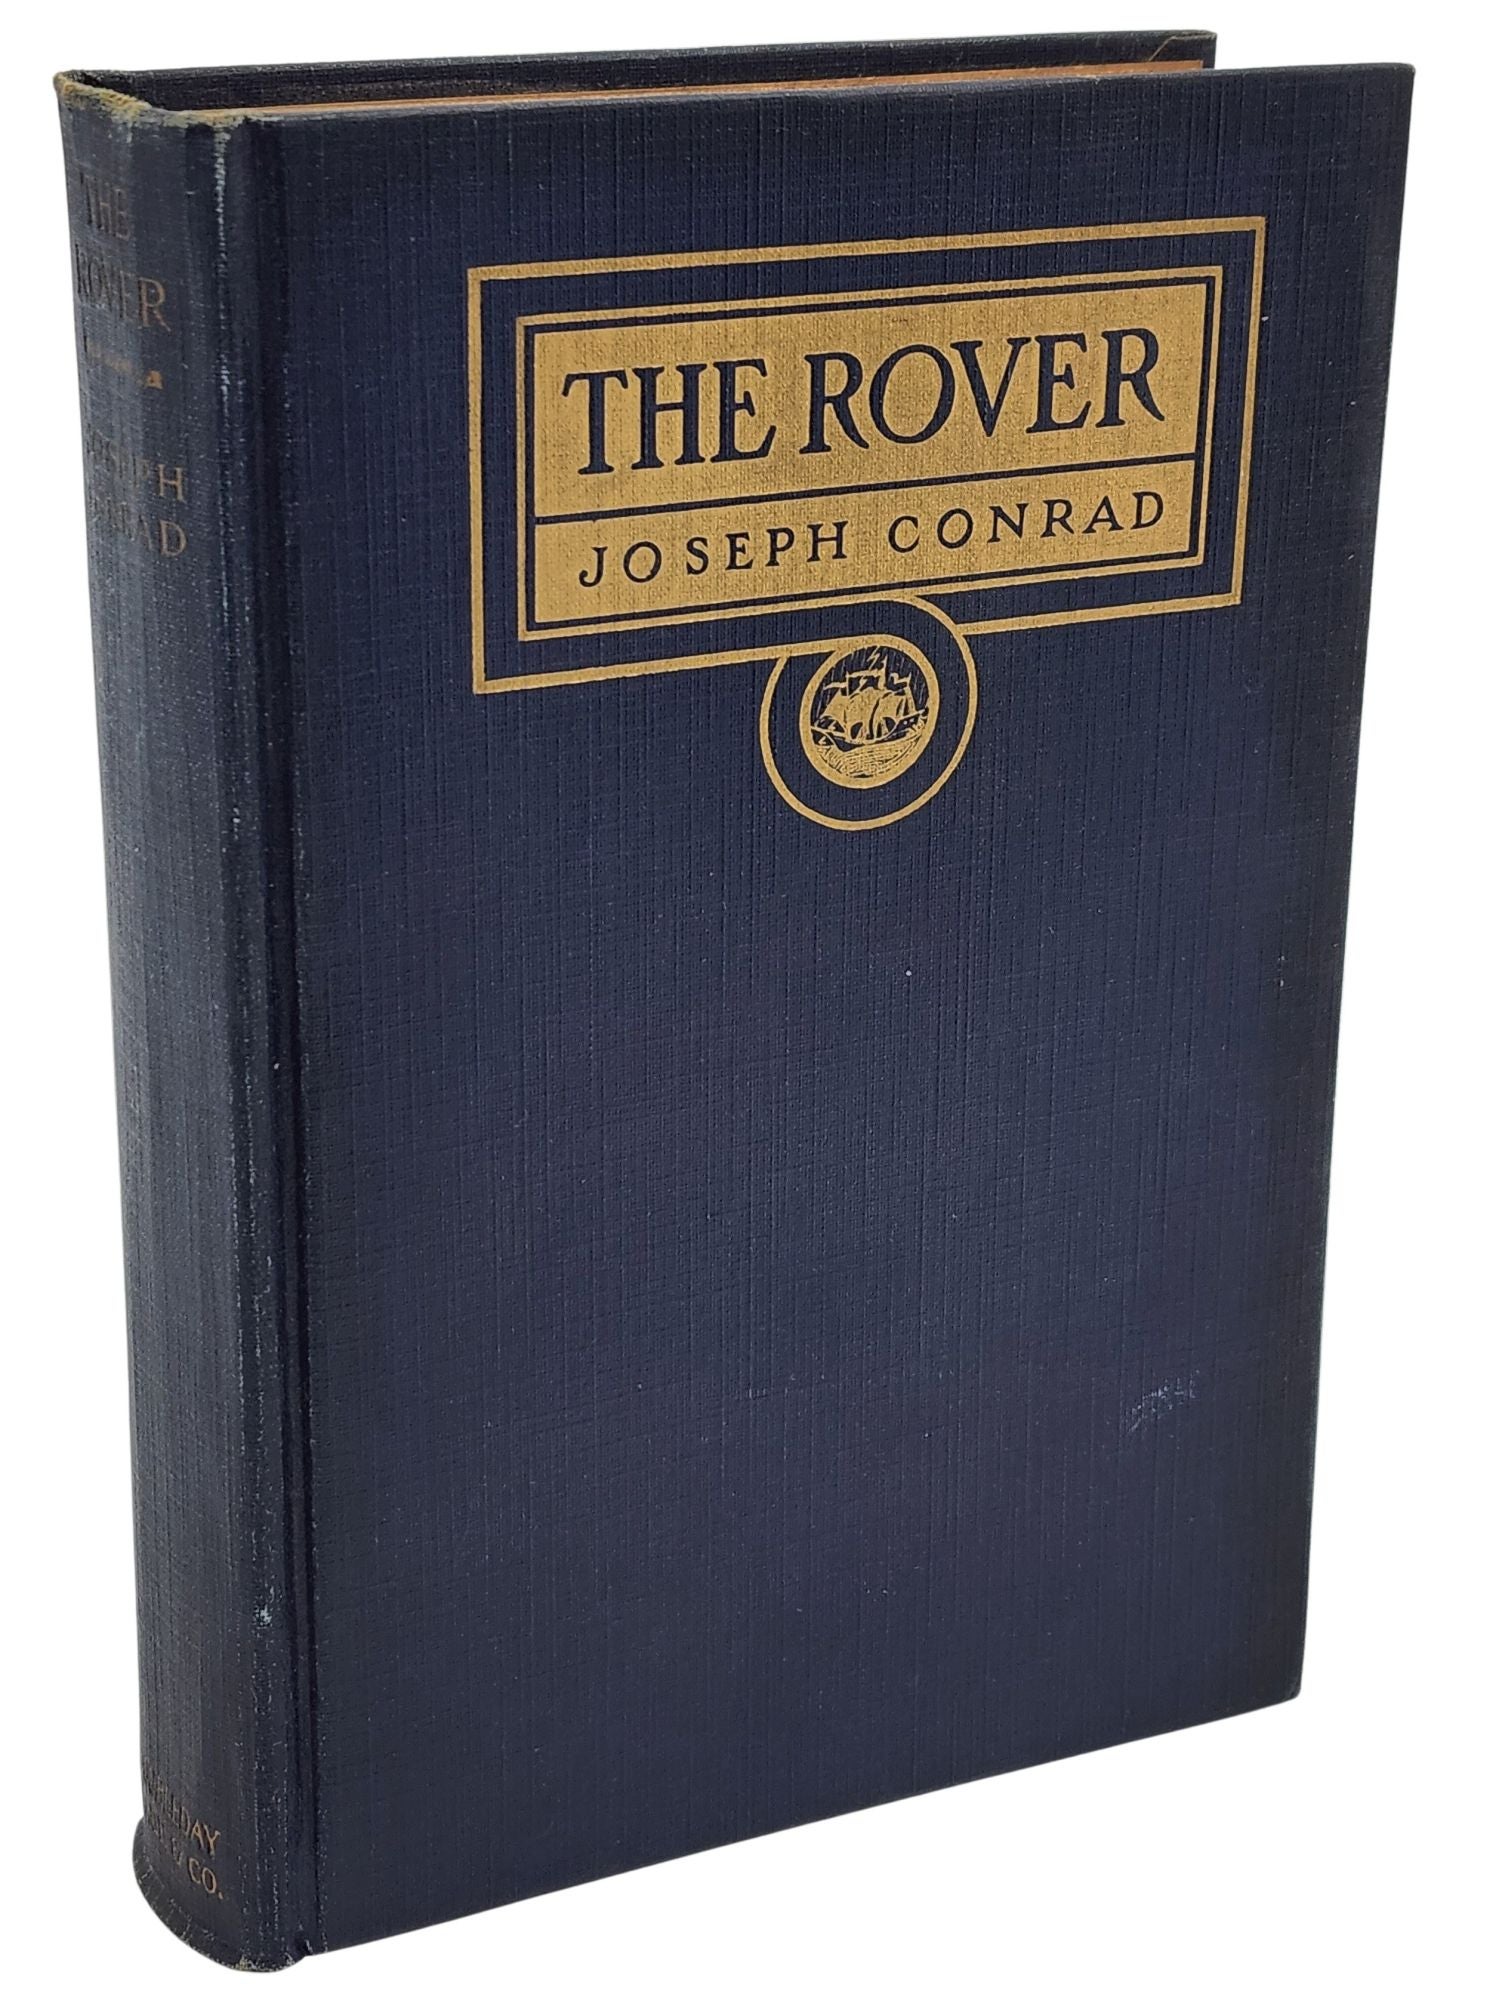 [Book #50761] THE ROVER. Joseph Conrad.